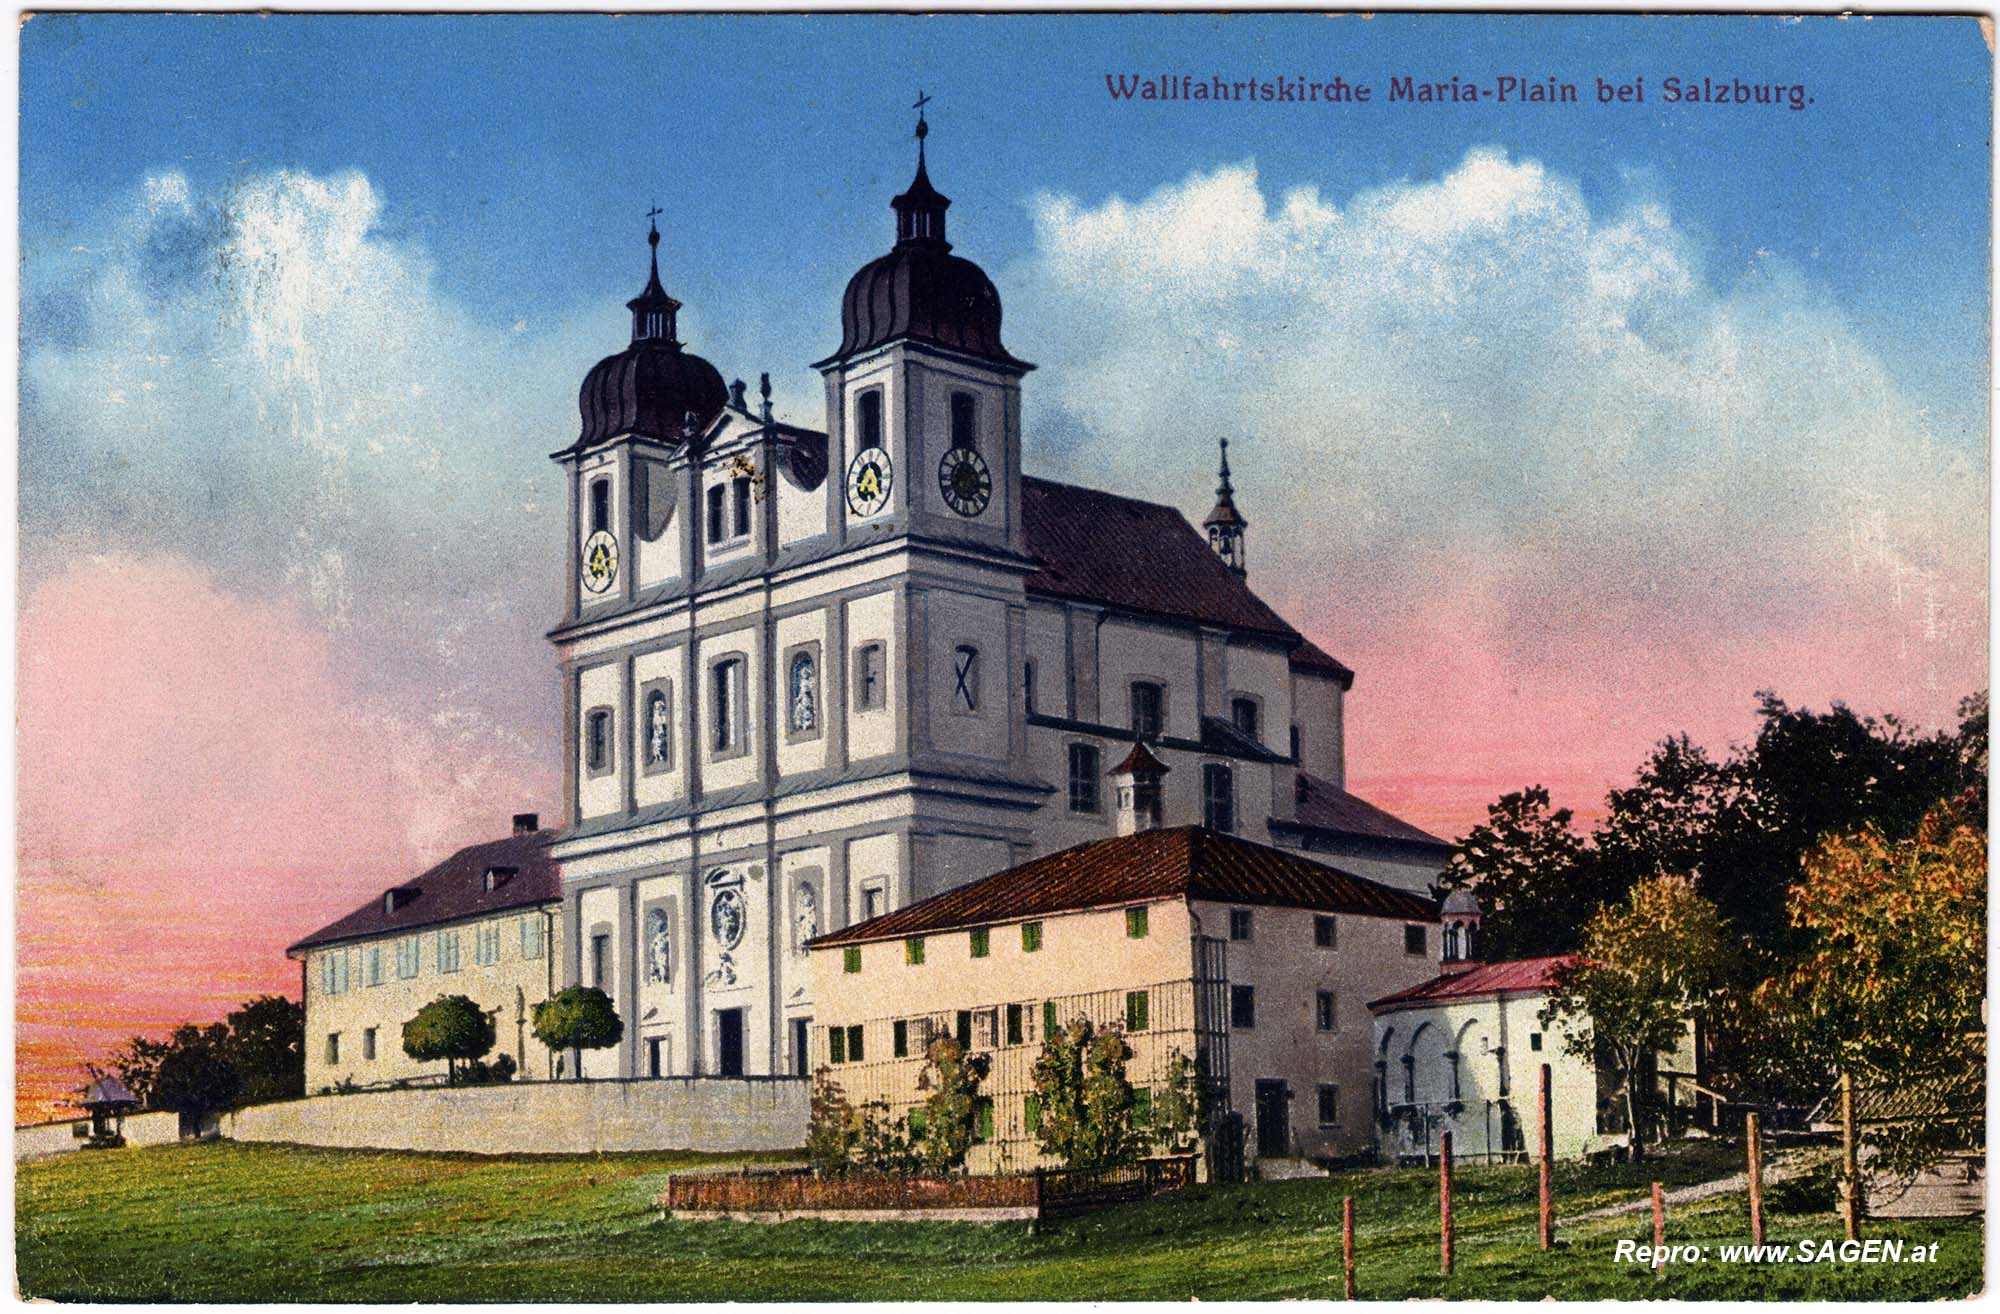 Wallfahrtskirche Maria Plain, Salzburg